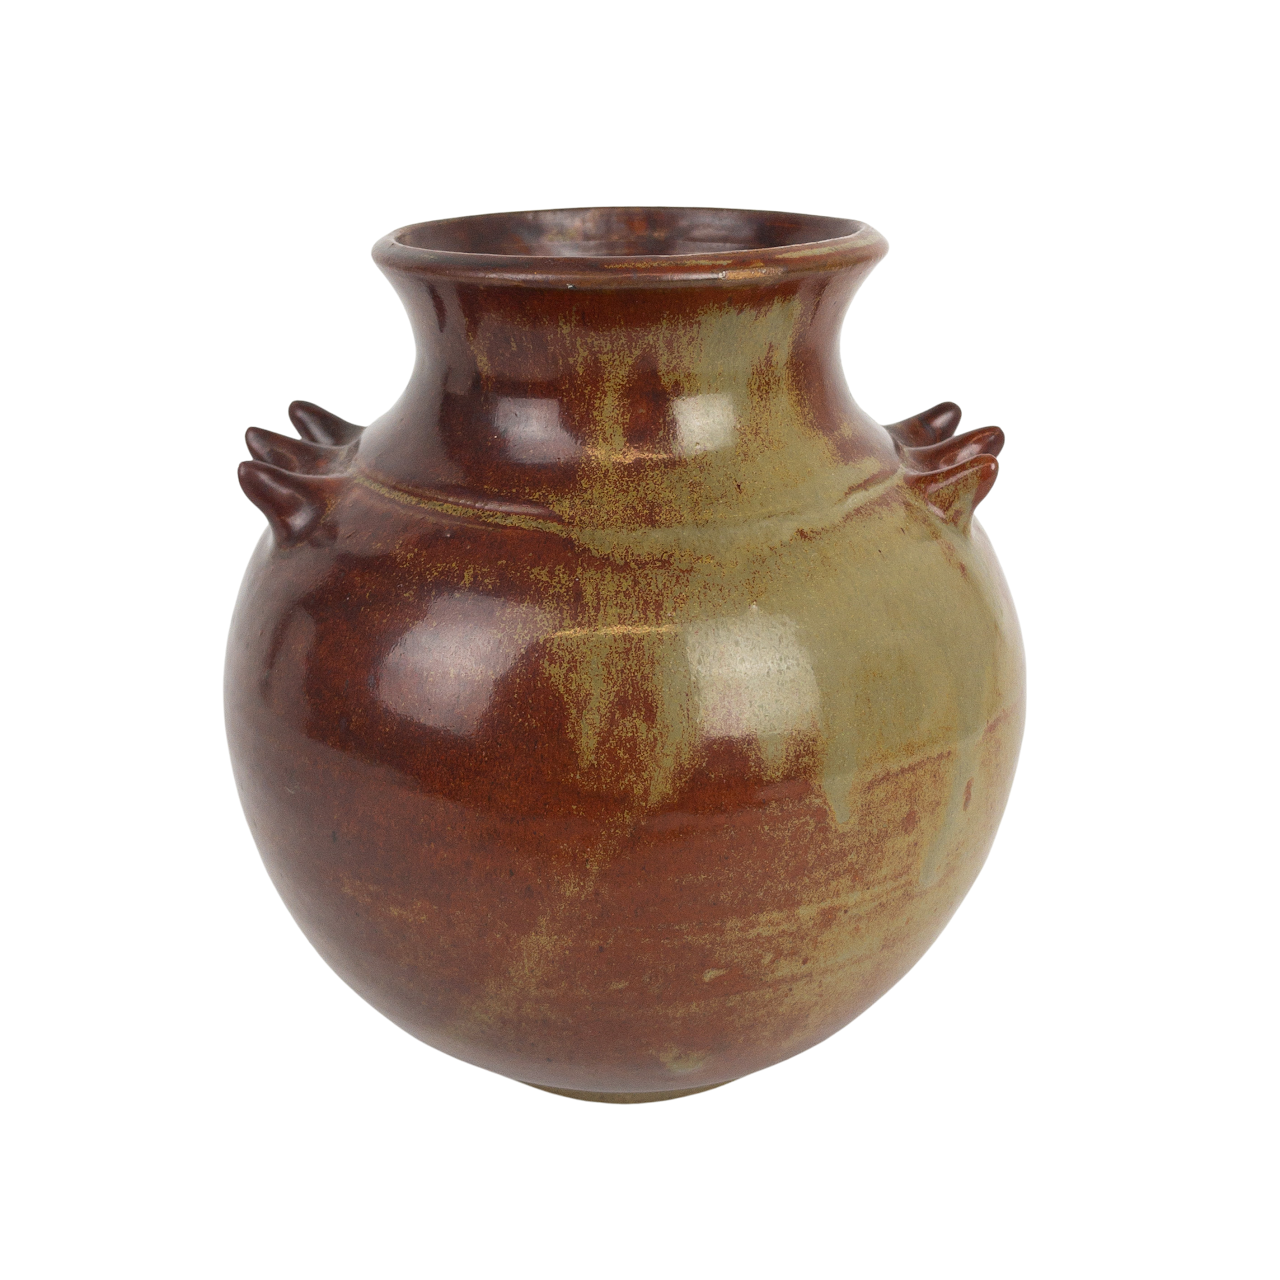 Signed Ceramic Spiked Vase